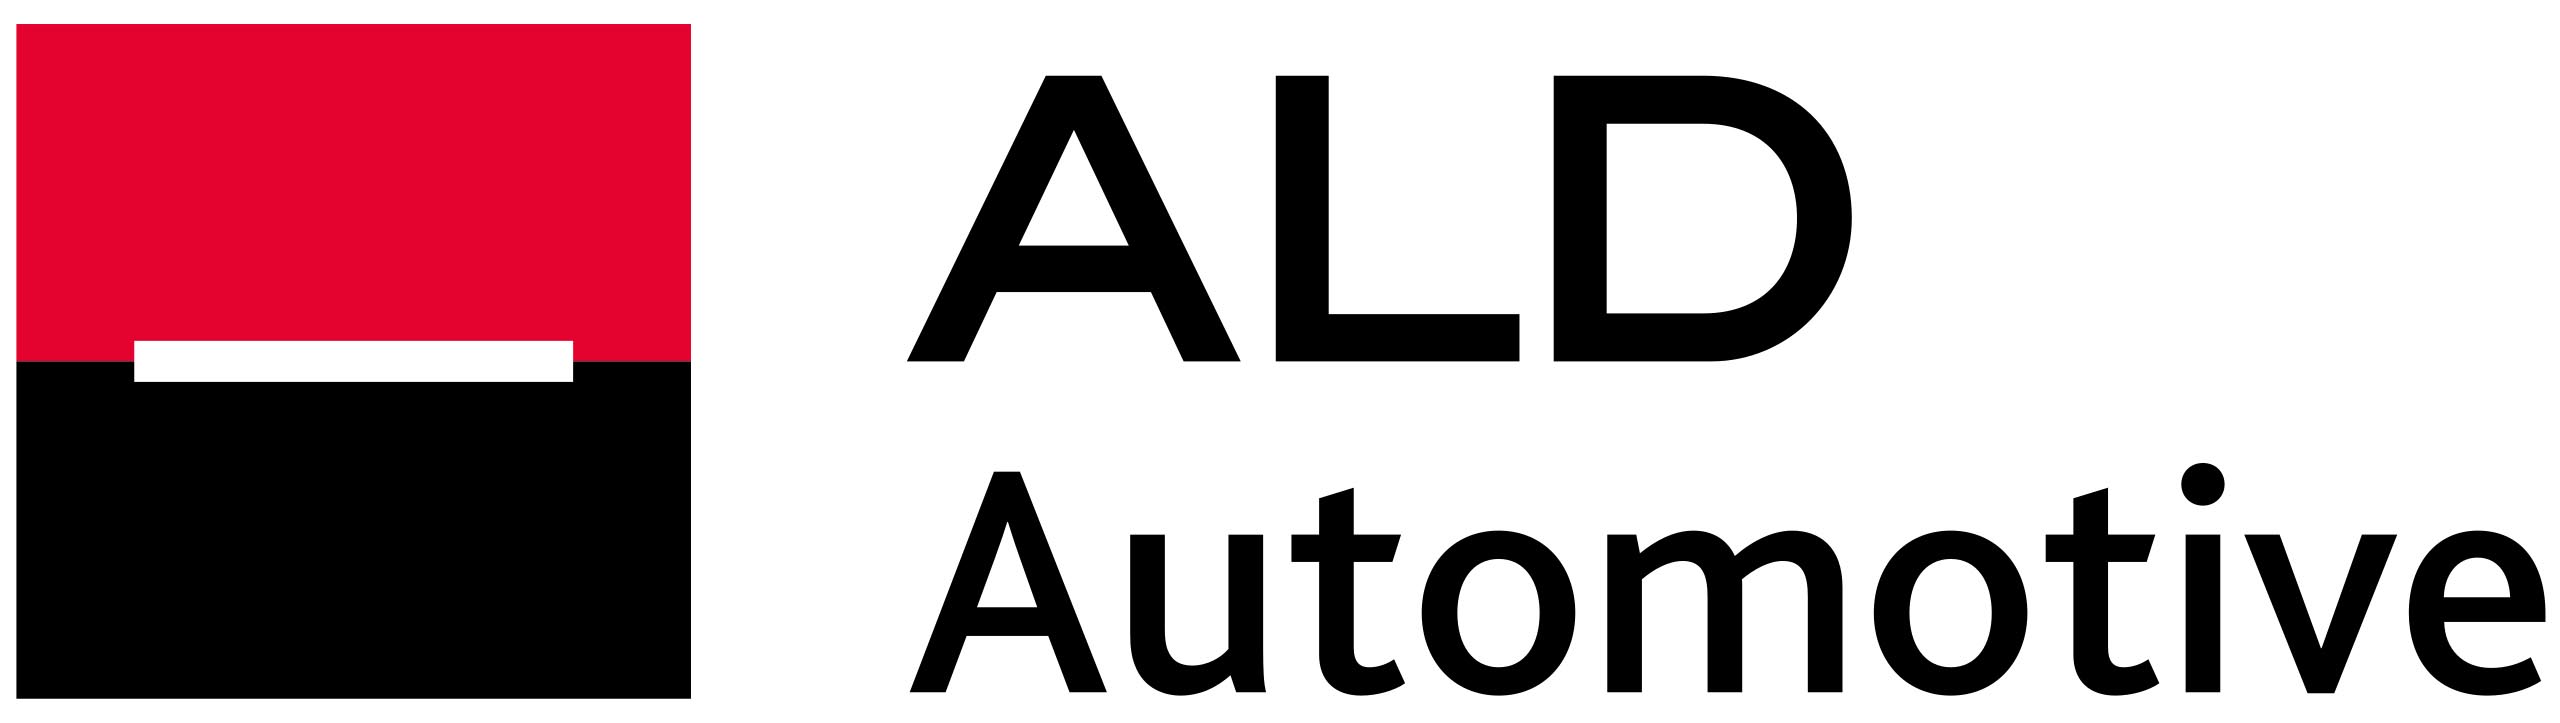 Logo_ALD_Automotive